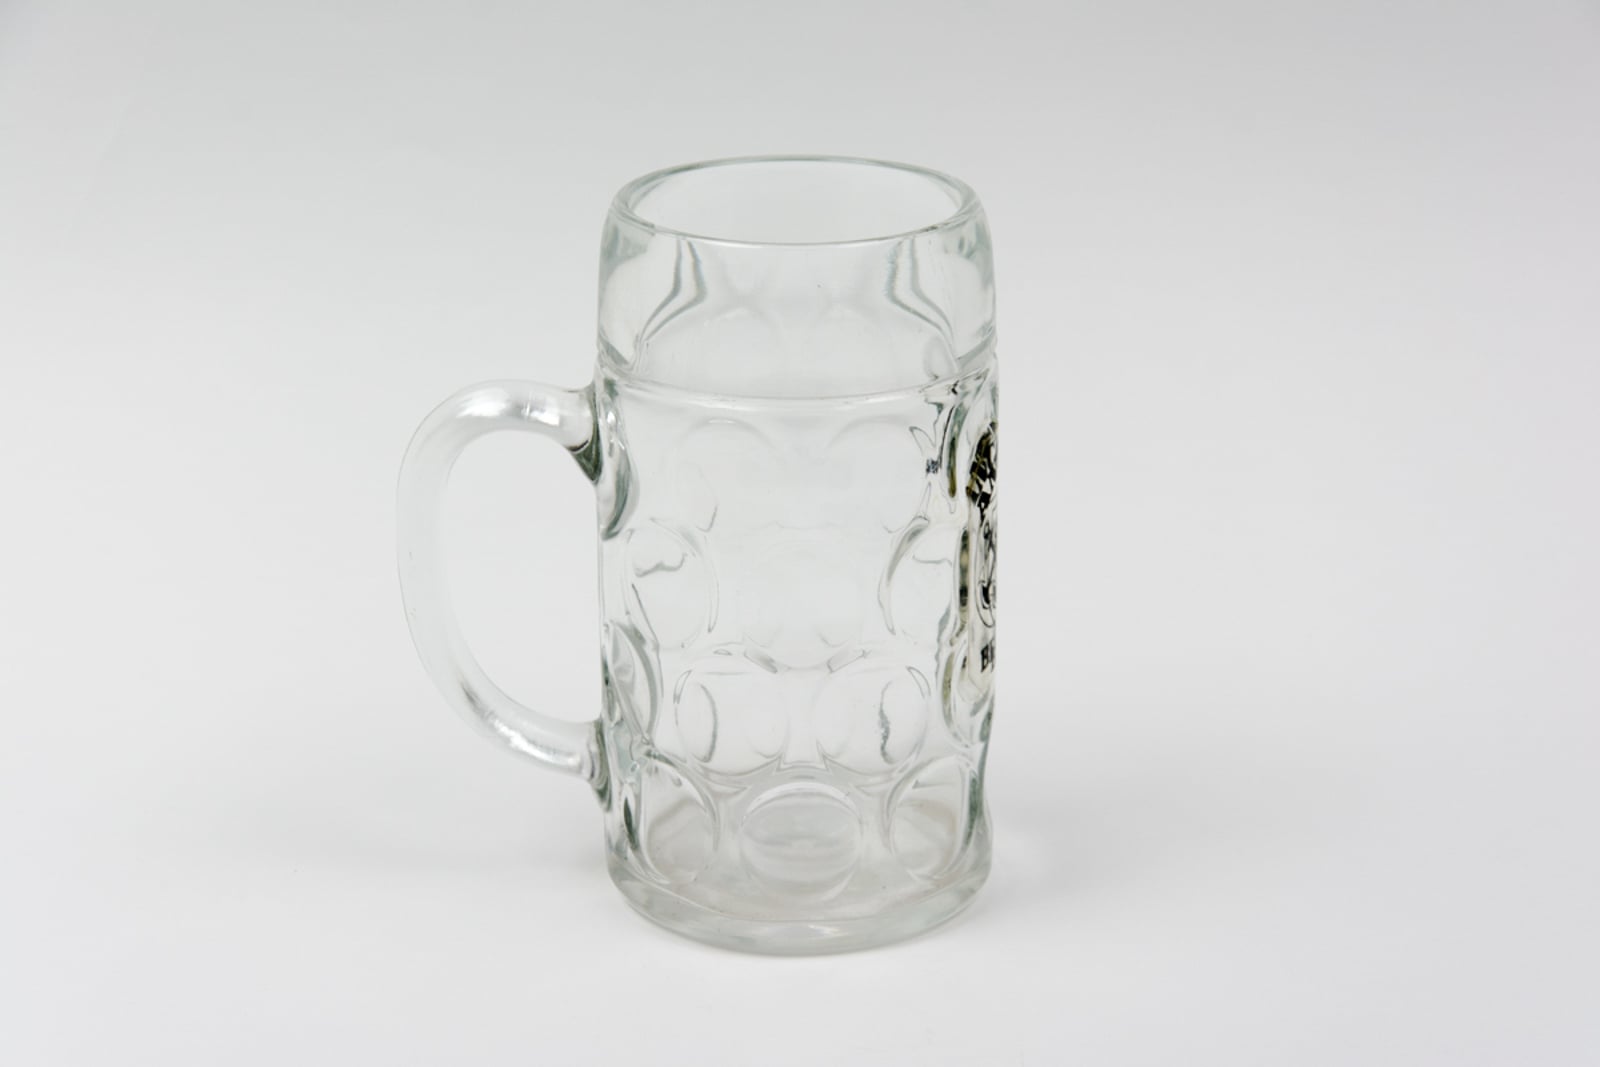 Anchor Beer Large Krug Glassware